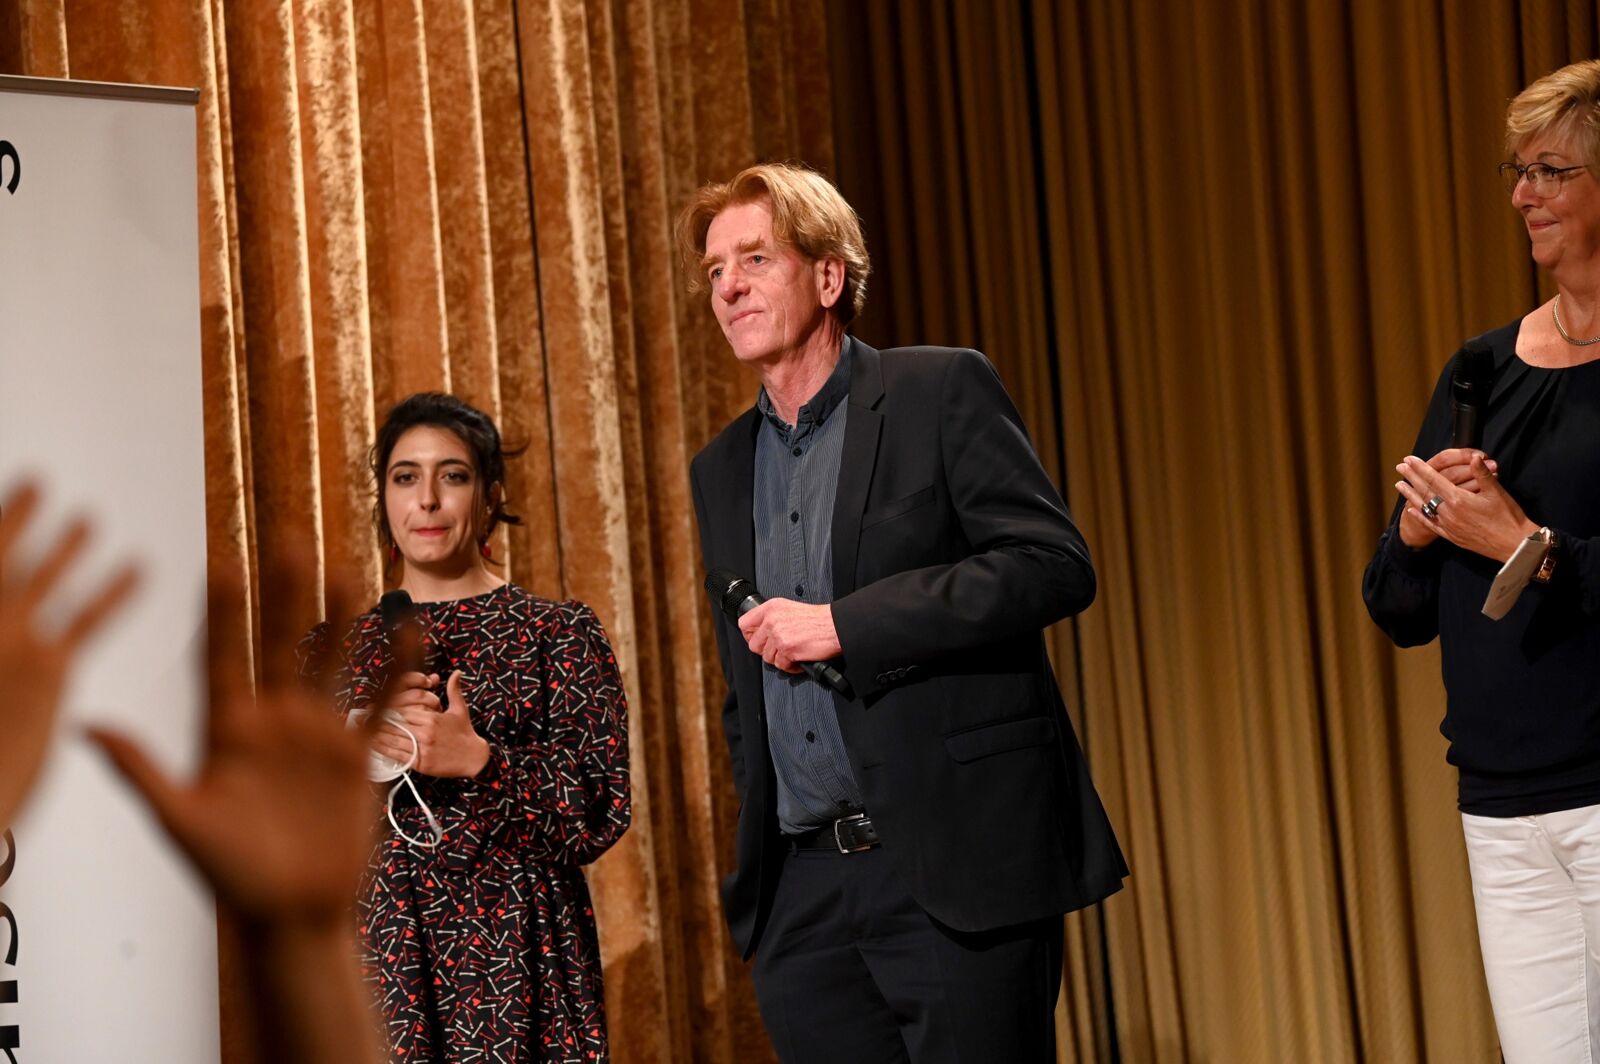 Hier sieht man Viktor Schenkel mit einem Mikrofon in der Hand auf der Preisverleihung des Tassilo-Sozialpreises 2021, links von ihm Sophie Pacini. Im Vordergrund sind zwei Hände zu sehen.